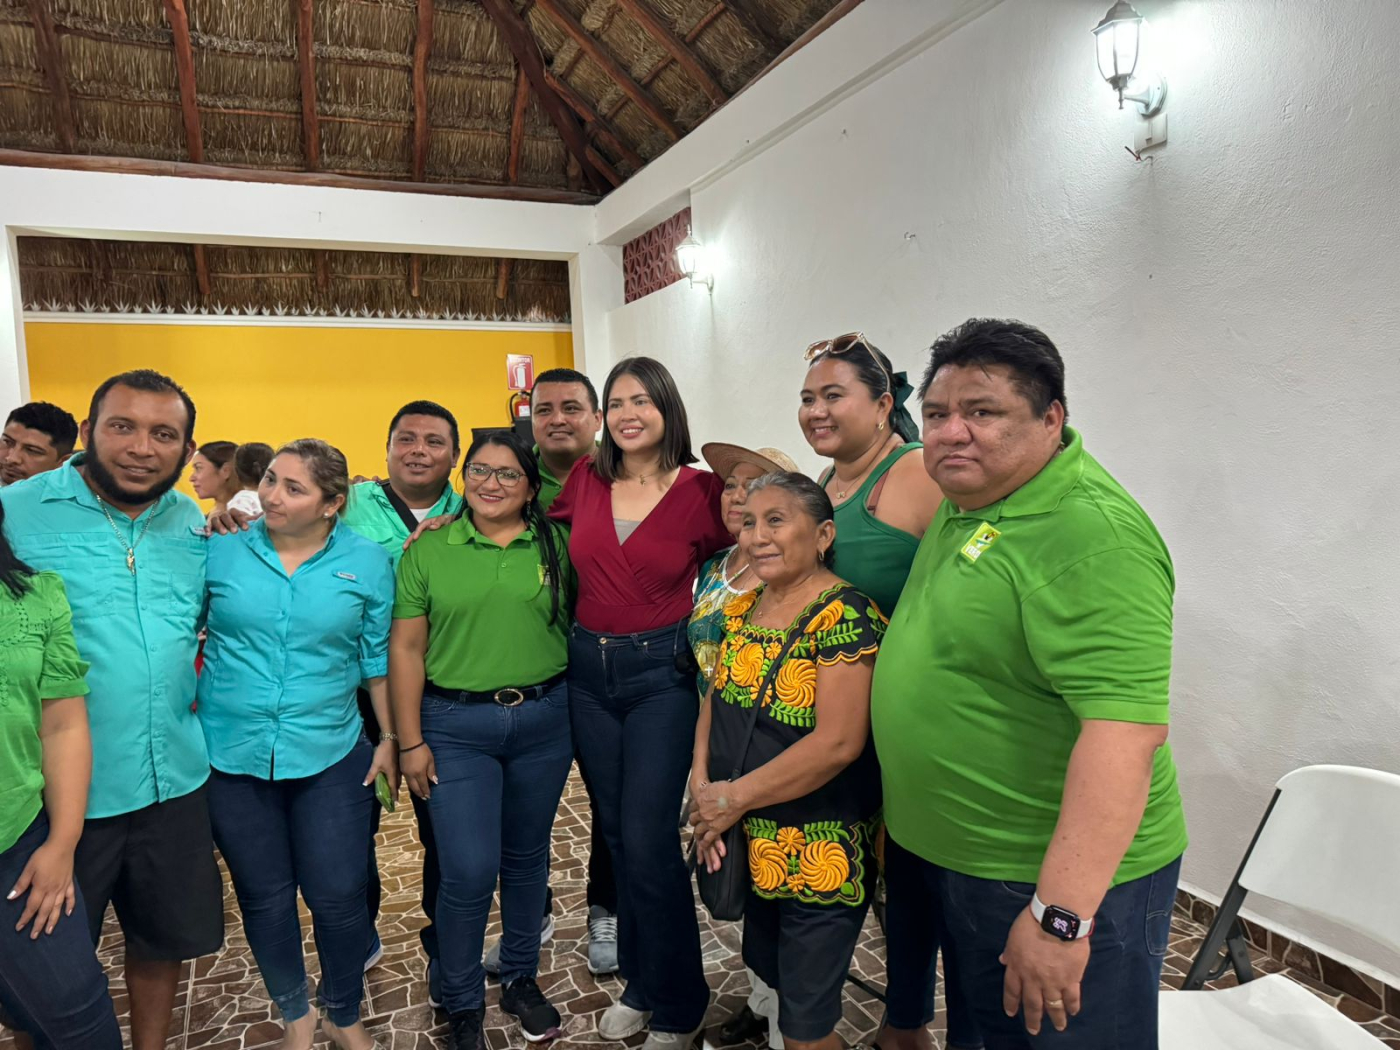 El Verde Cozumel reafirma su lealtad con Morena y el PT: Chacho Mendoza